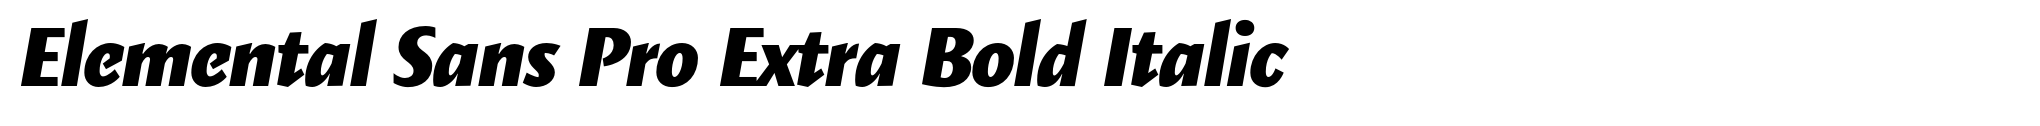 Elemental Sans Pro Extra Bold Italic image